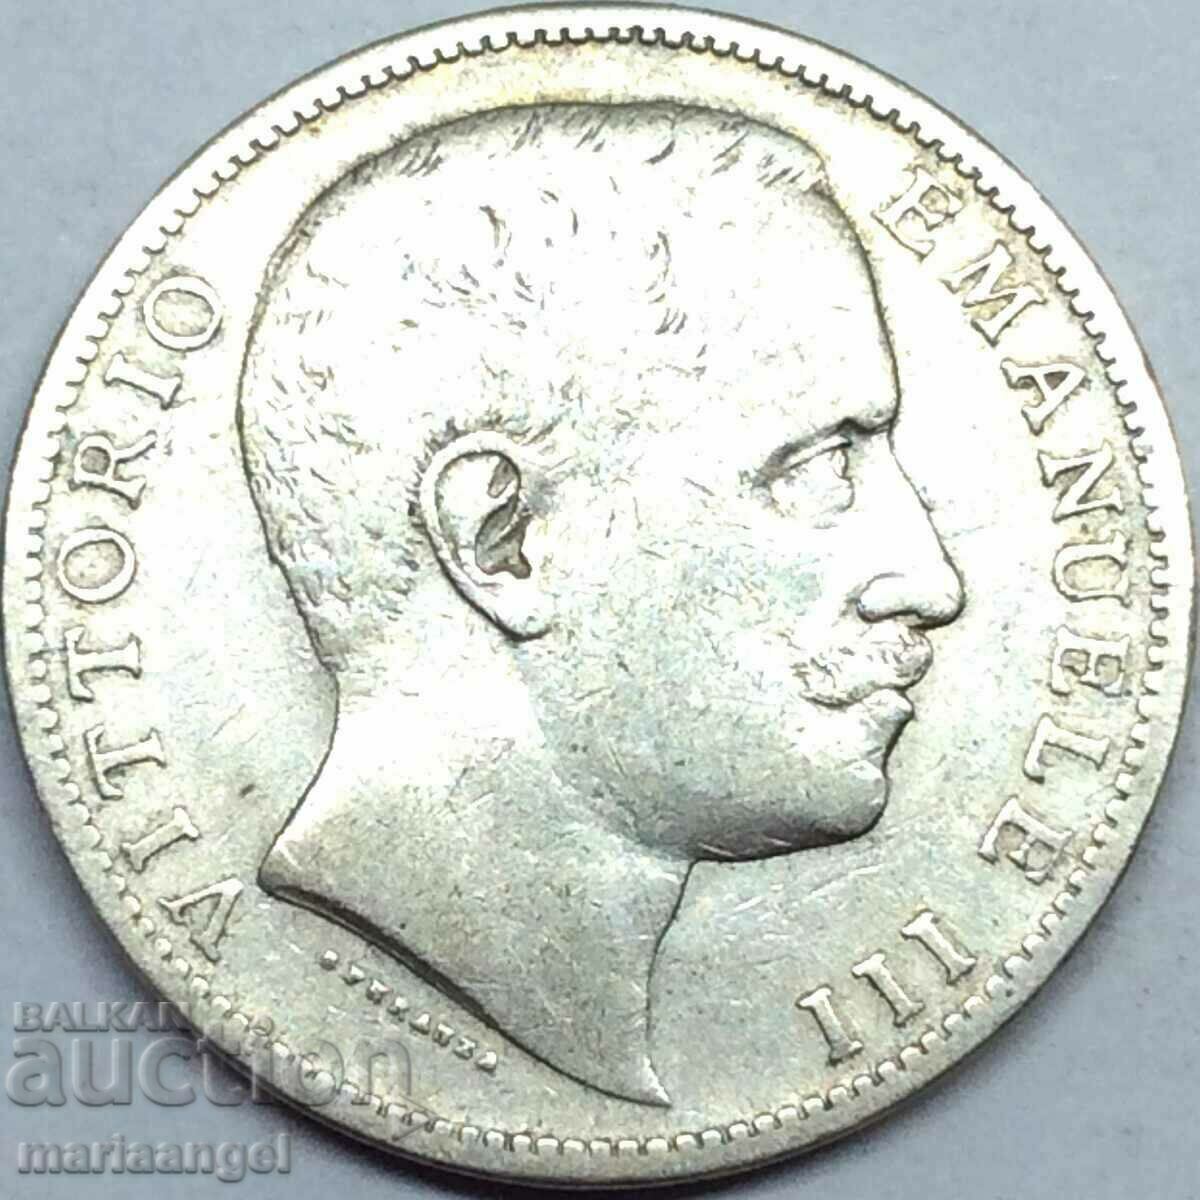 2 lire 1905 Italia Savoy Eagle - Sabauda argint